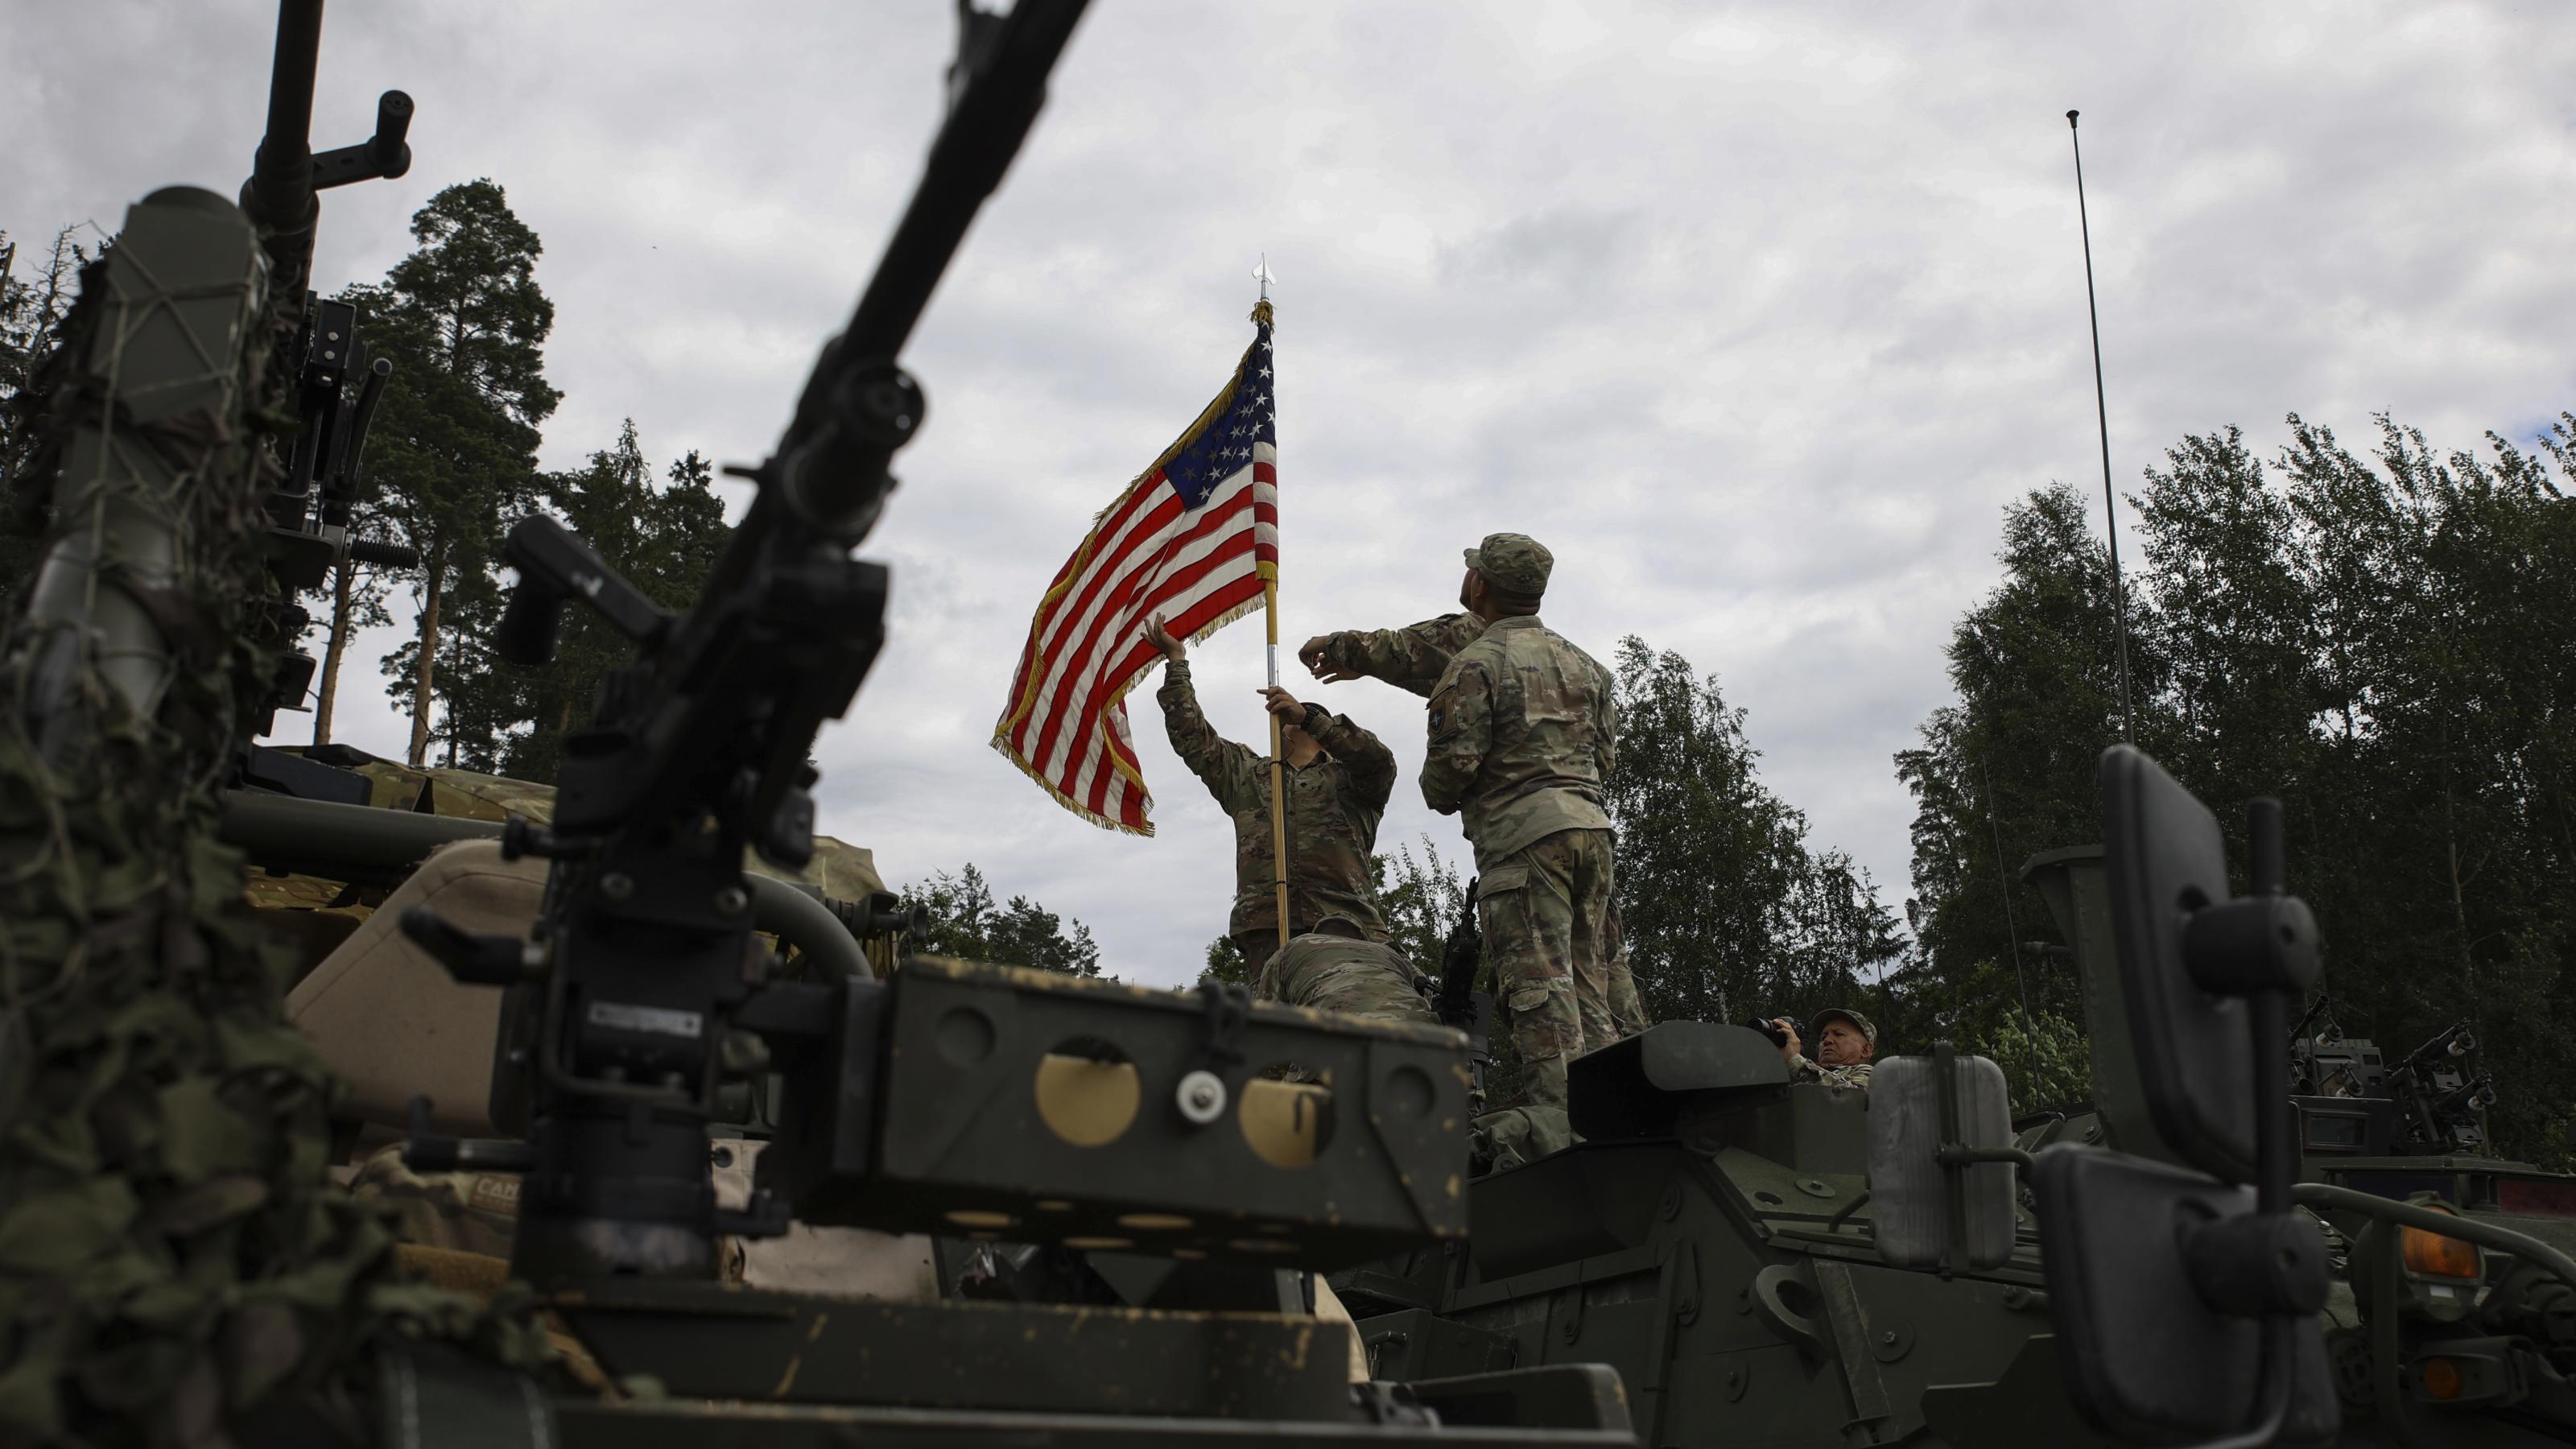 US Soldaten bringen auf einem Militärfahrzeug in der Nähe des polnischen Szypliszki eine US-amerikanische Flagge an.